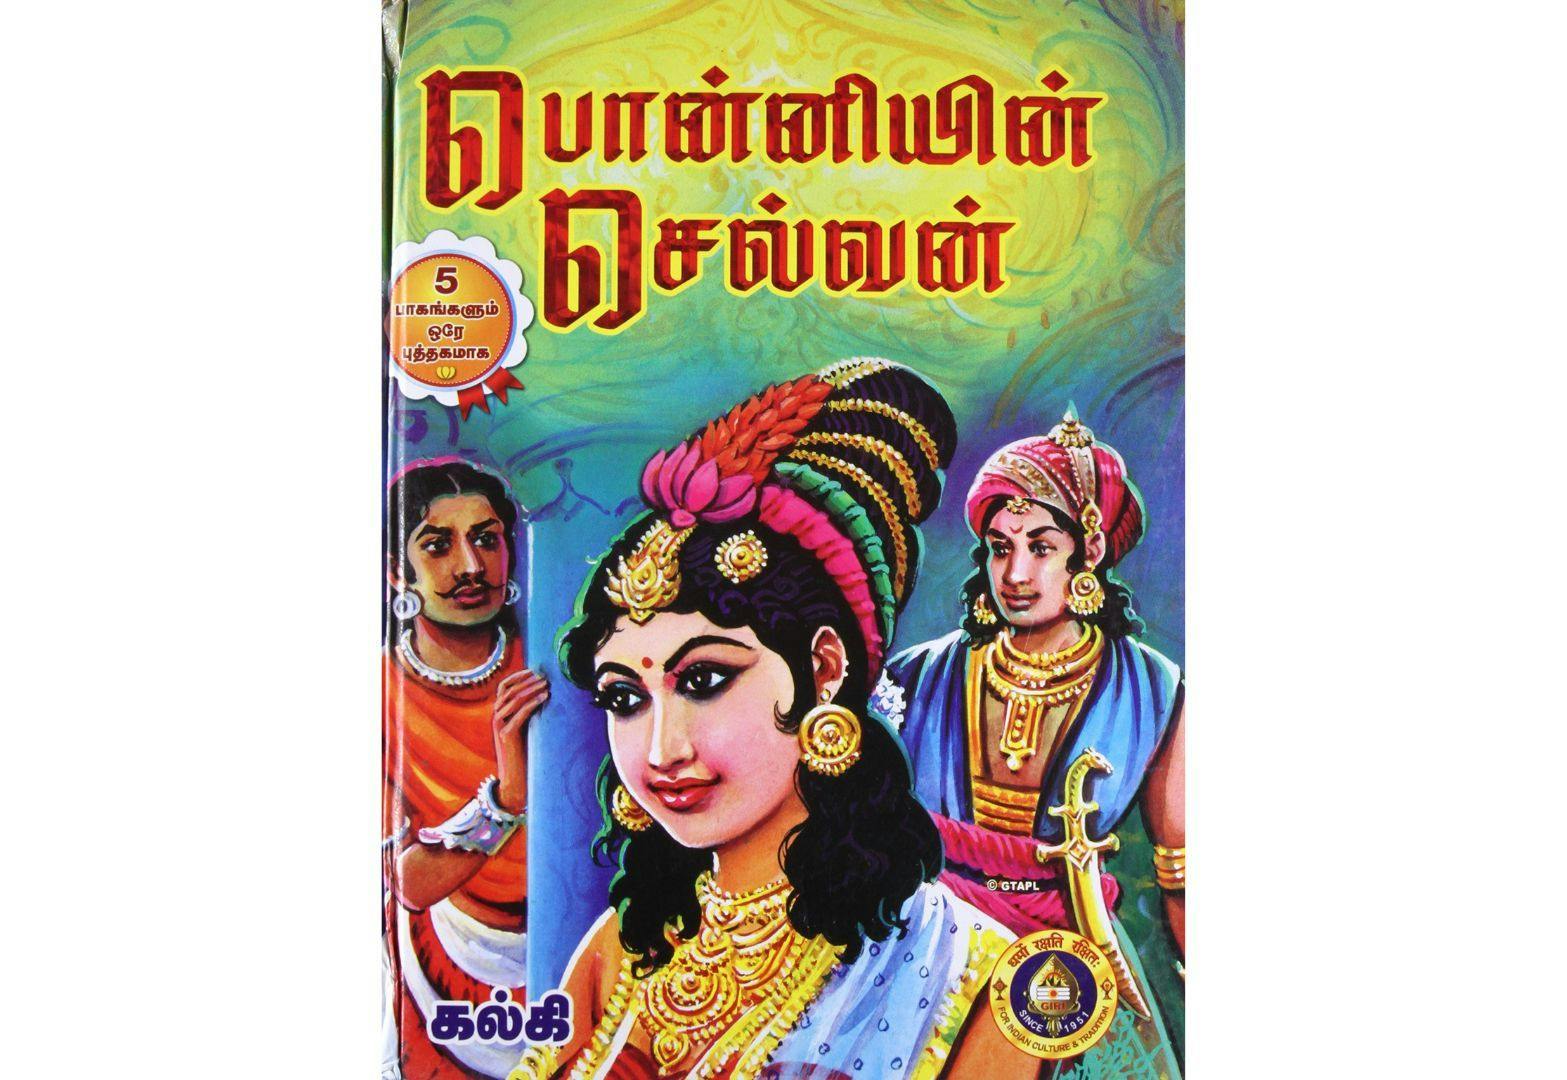 Ponniyin Selvan novel by Ramaswamy 'Kalki' Krishnamurthy | Wikimedia Commons